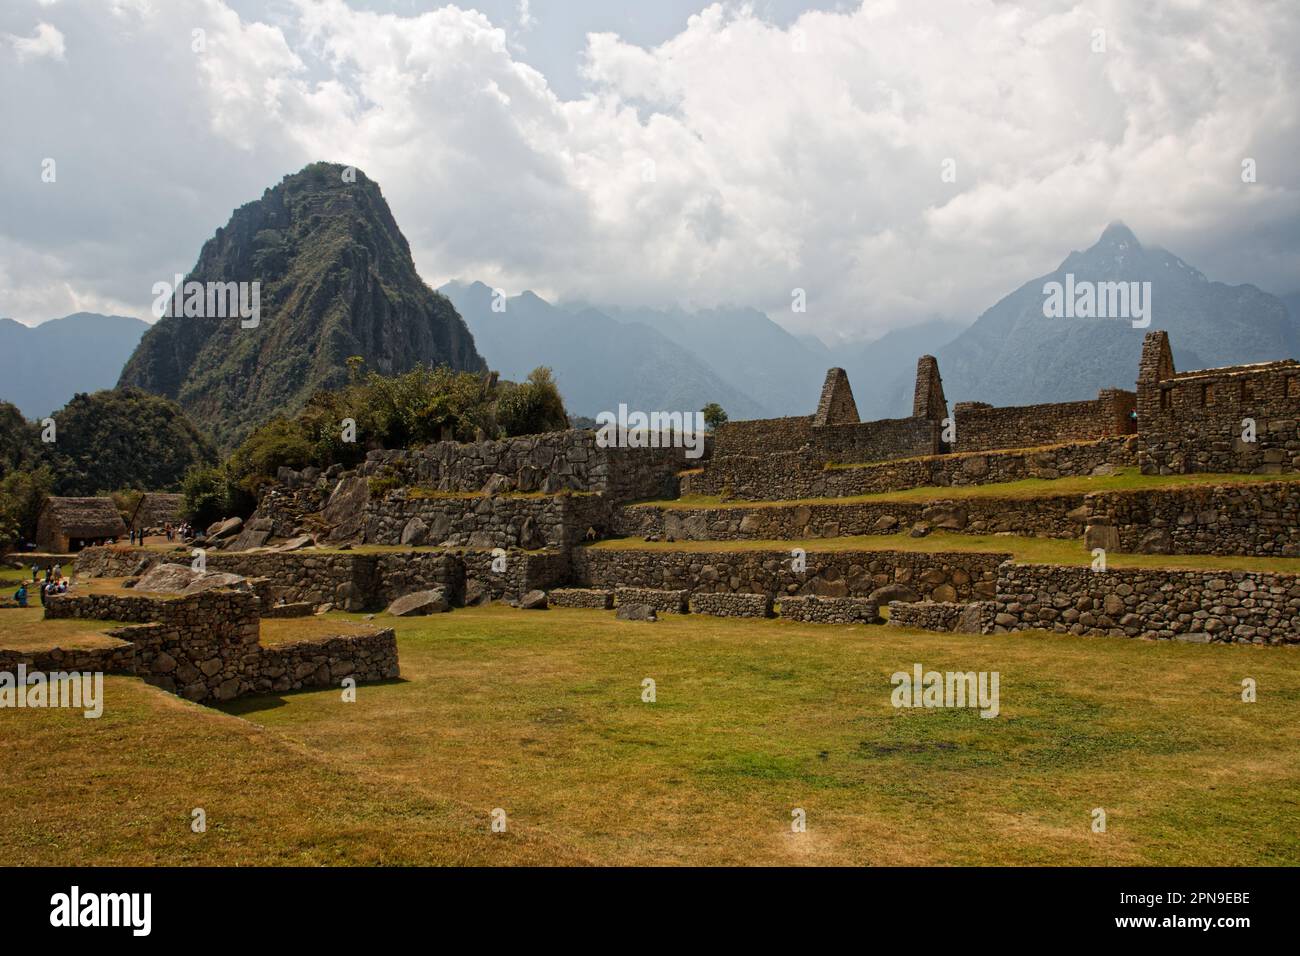 Inside the ruins of Machu Picchu, Cusco Department, Peru Stock Photo